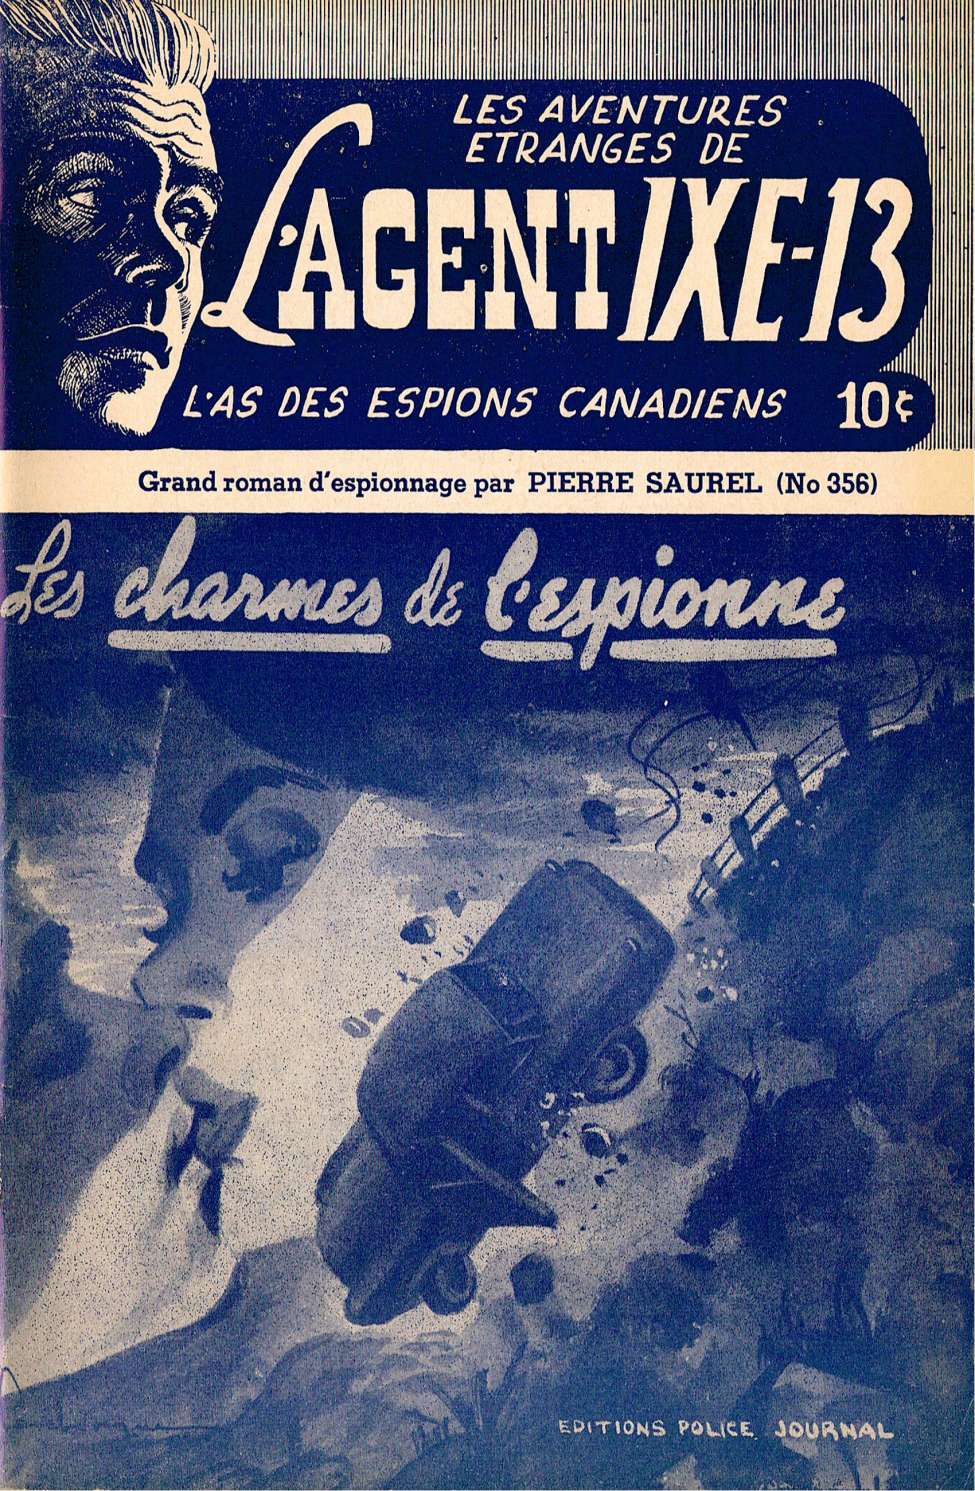 Book Cover For L'Agent IXE-13 v2 356 - Les charmes de l'espionne